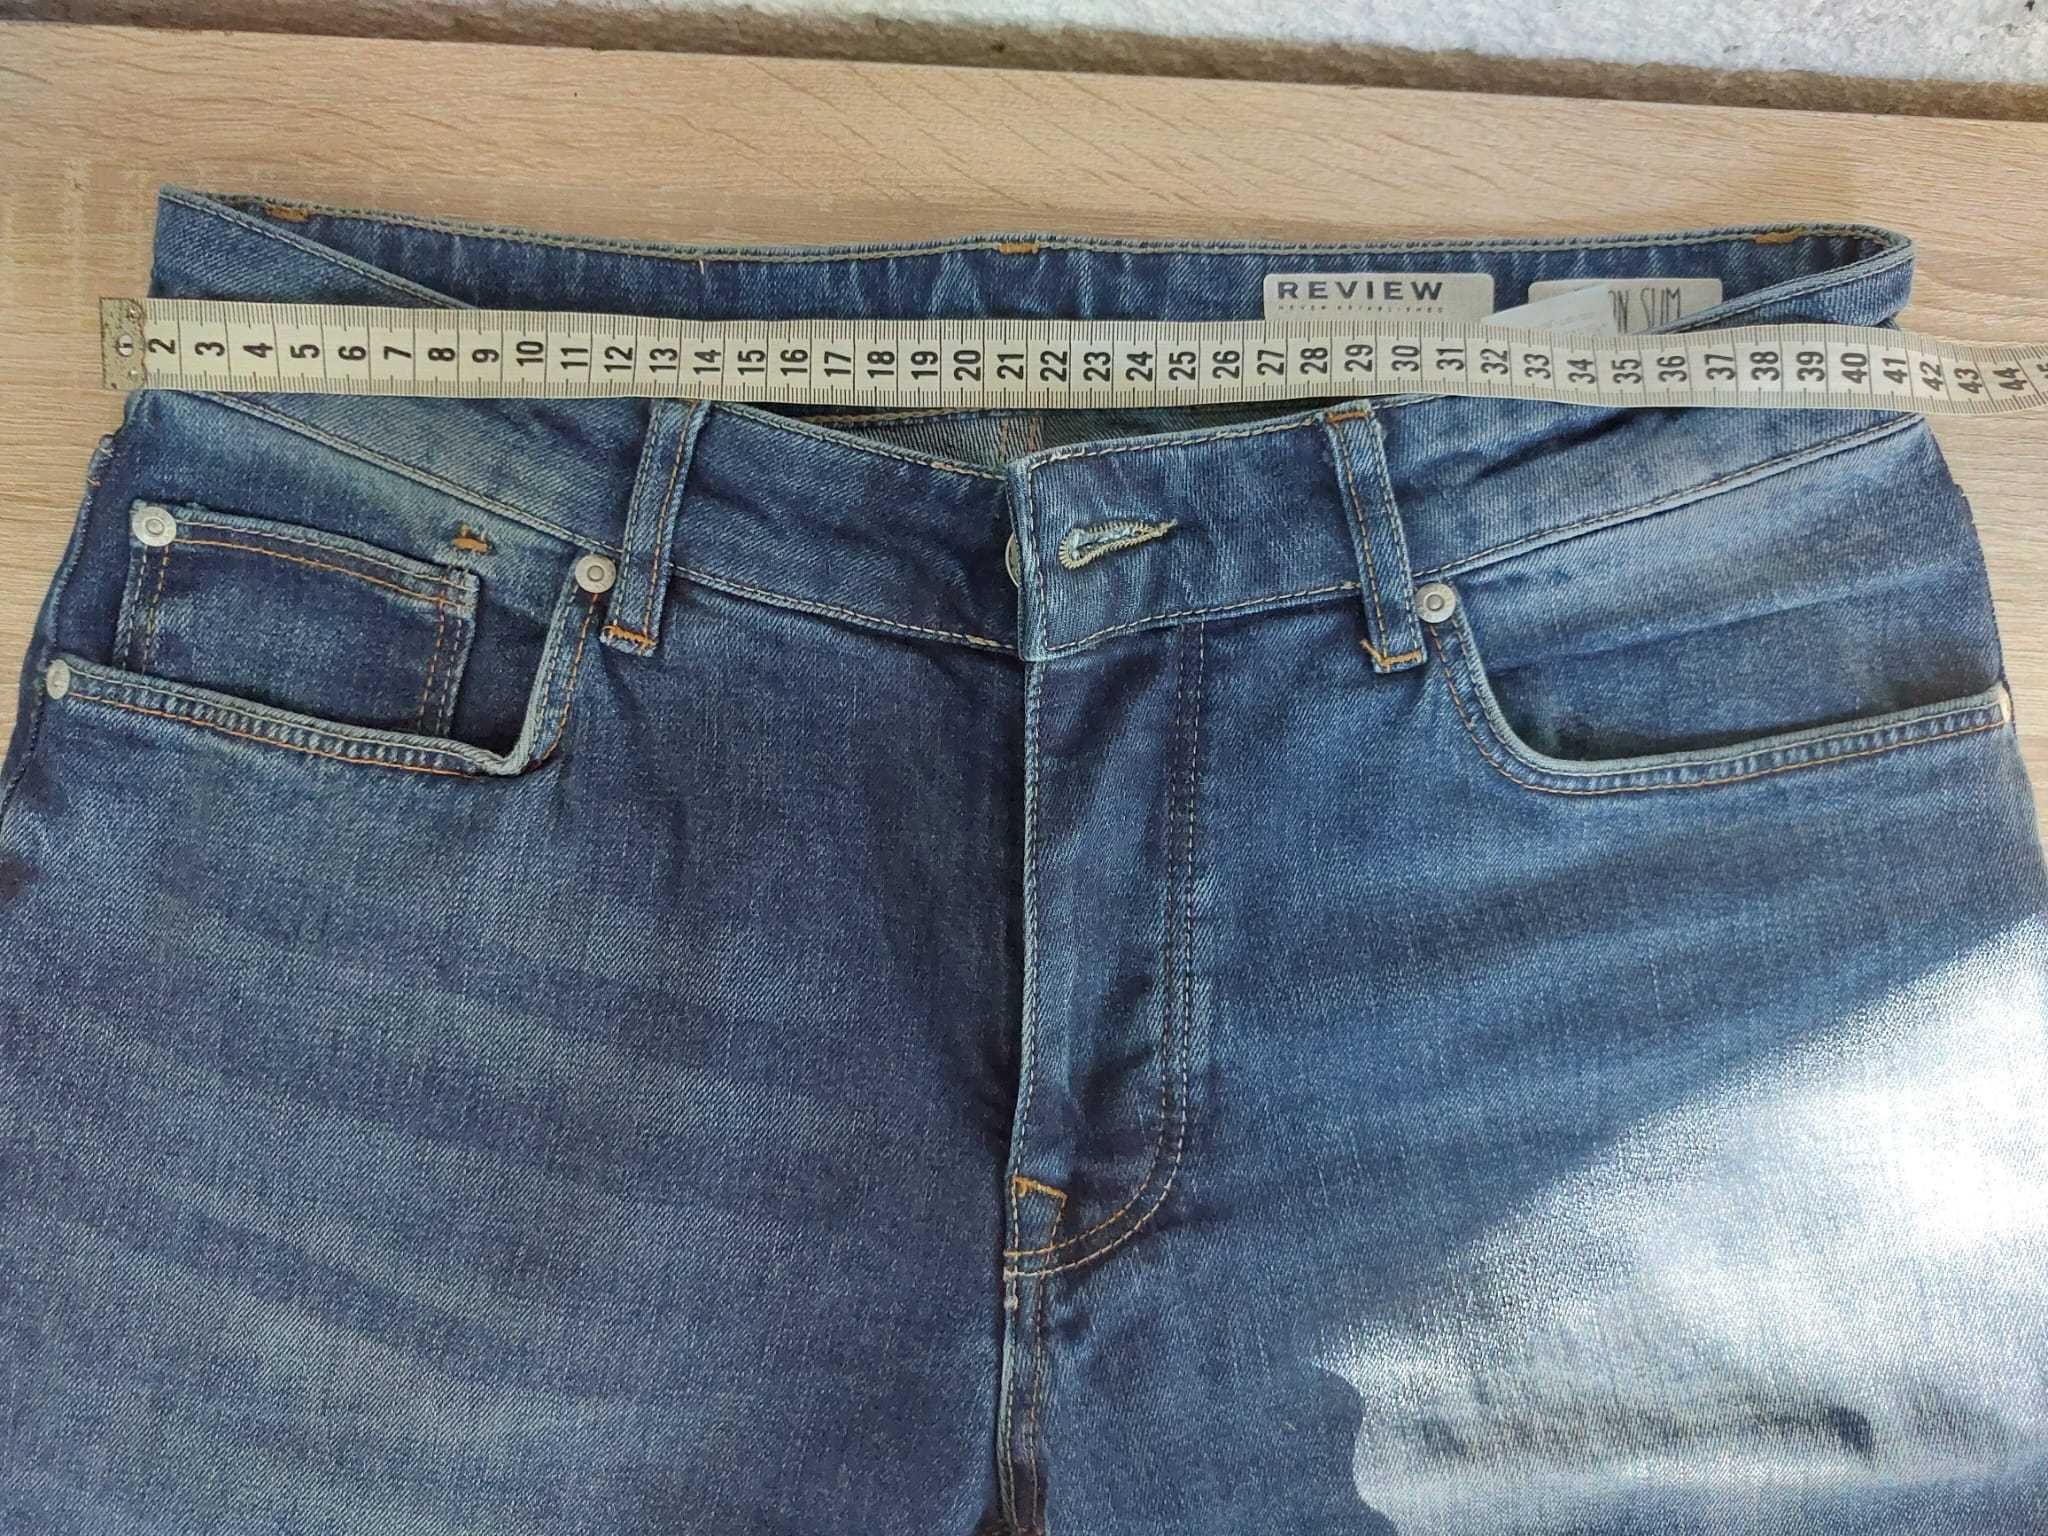 Jeans Review Slim fit marime M sau 32